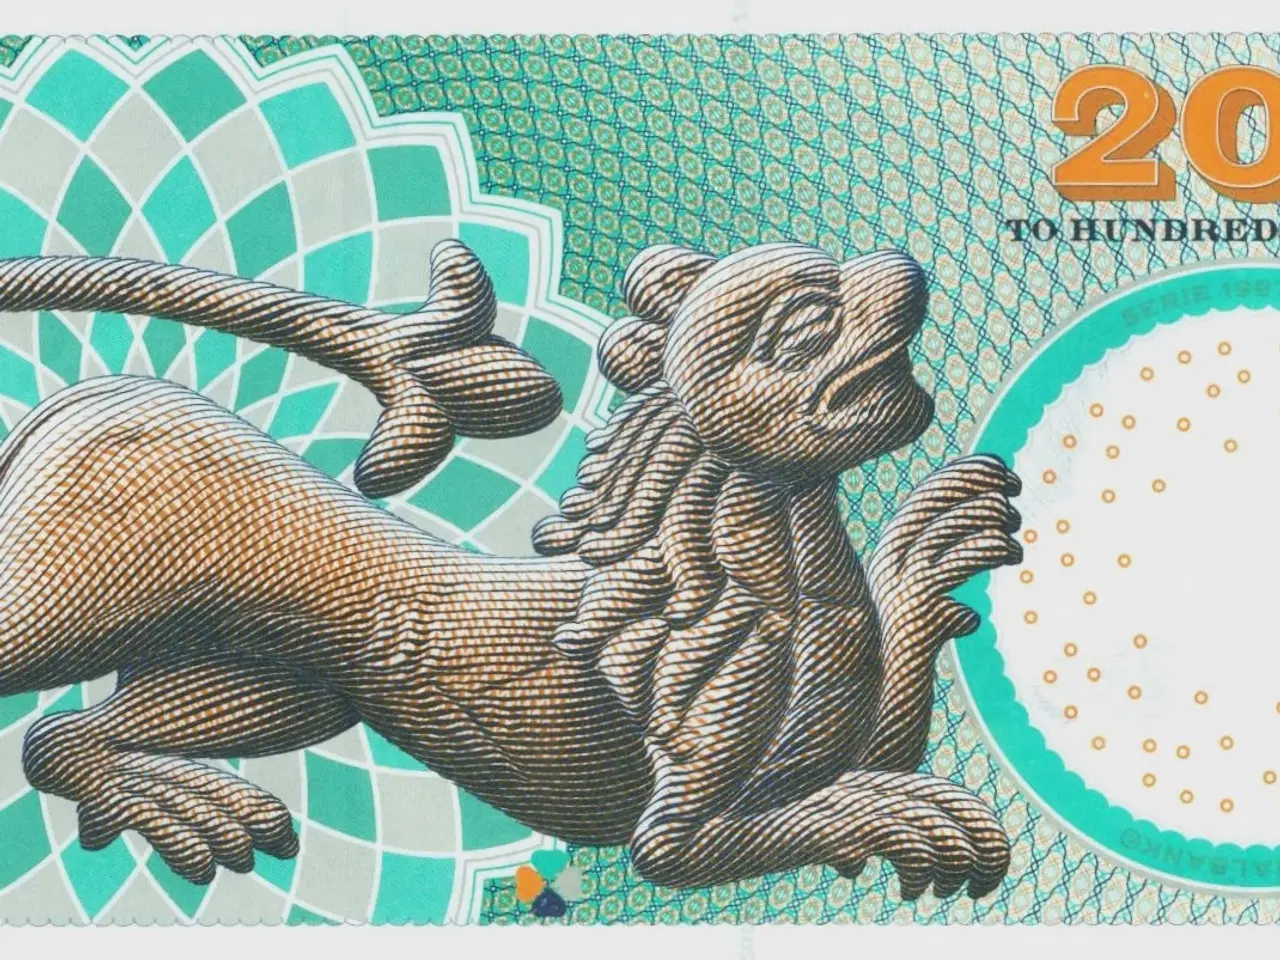 Billede 2 - DK. 200 kr. seddel fra 2008